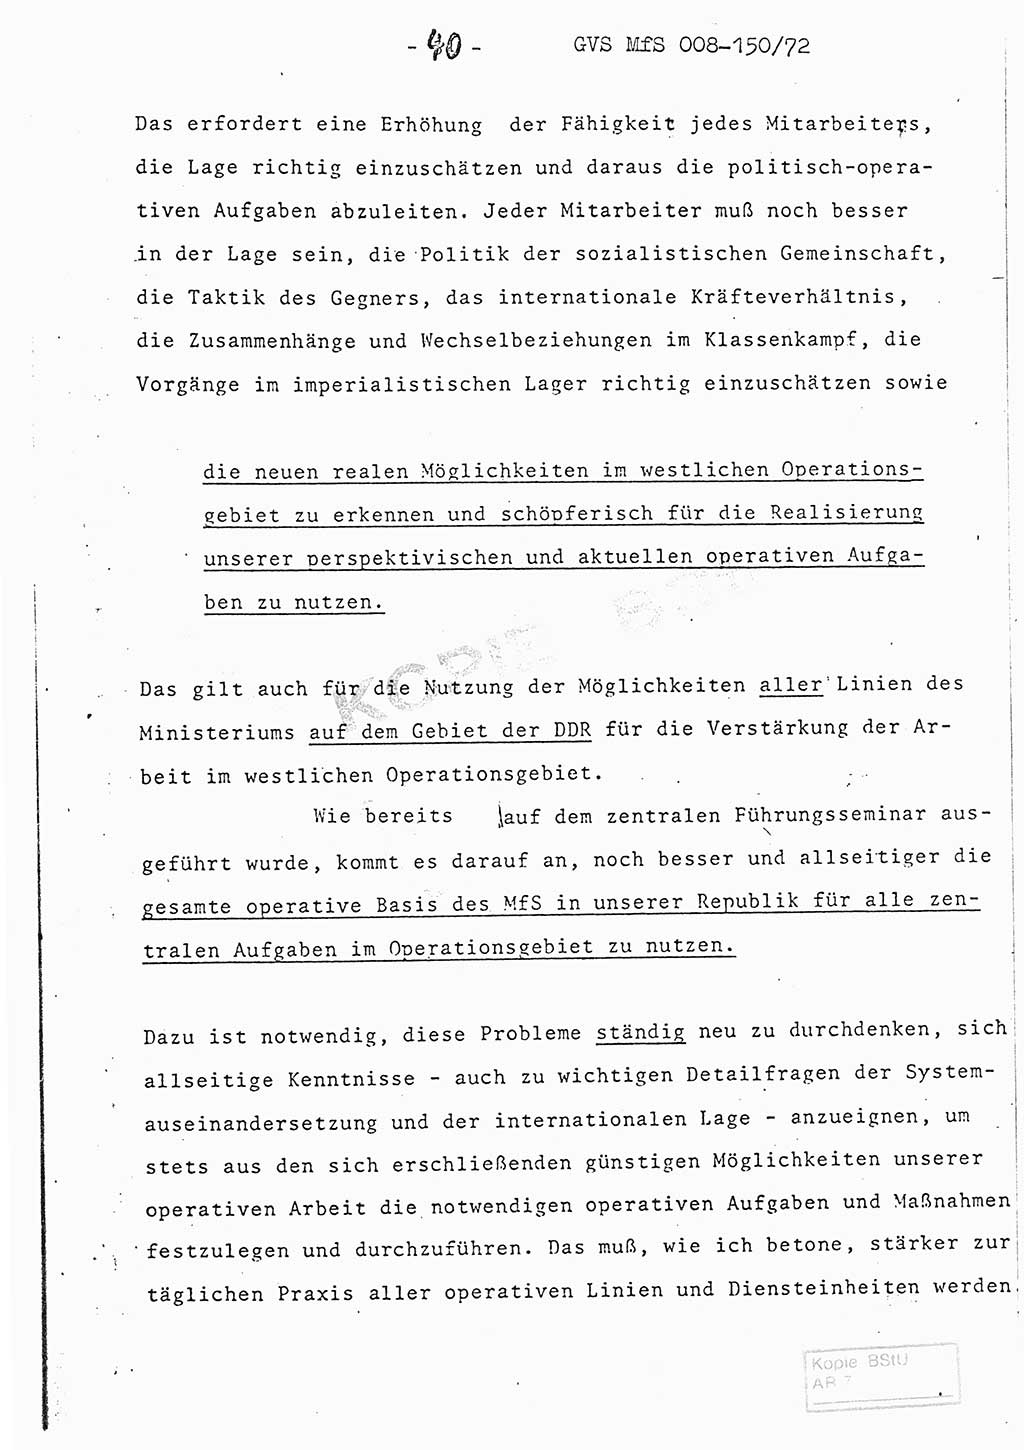 Referat (Entwurf) des Genossen Minister (Generaloberst Erich Mielke) auf der Dienstkonferenz 1972, Ministerium für Staatssicherheit (MfS) [Deutsche Demokratische Republik (DDR)], Der Minister, Geheime Verschlußsache (GVS) 008-150/72, Berlin 25.2.1972, Seite 40 (Ref. Entw. DK MfS DDR Min. GVS 008-150/72 1972, S. 40)